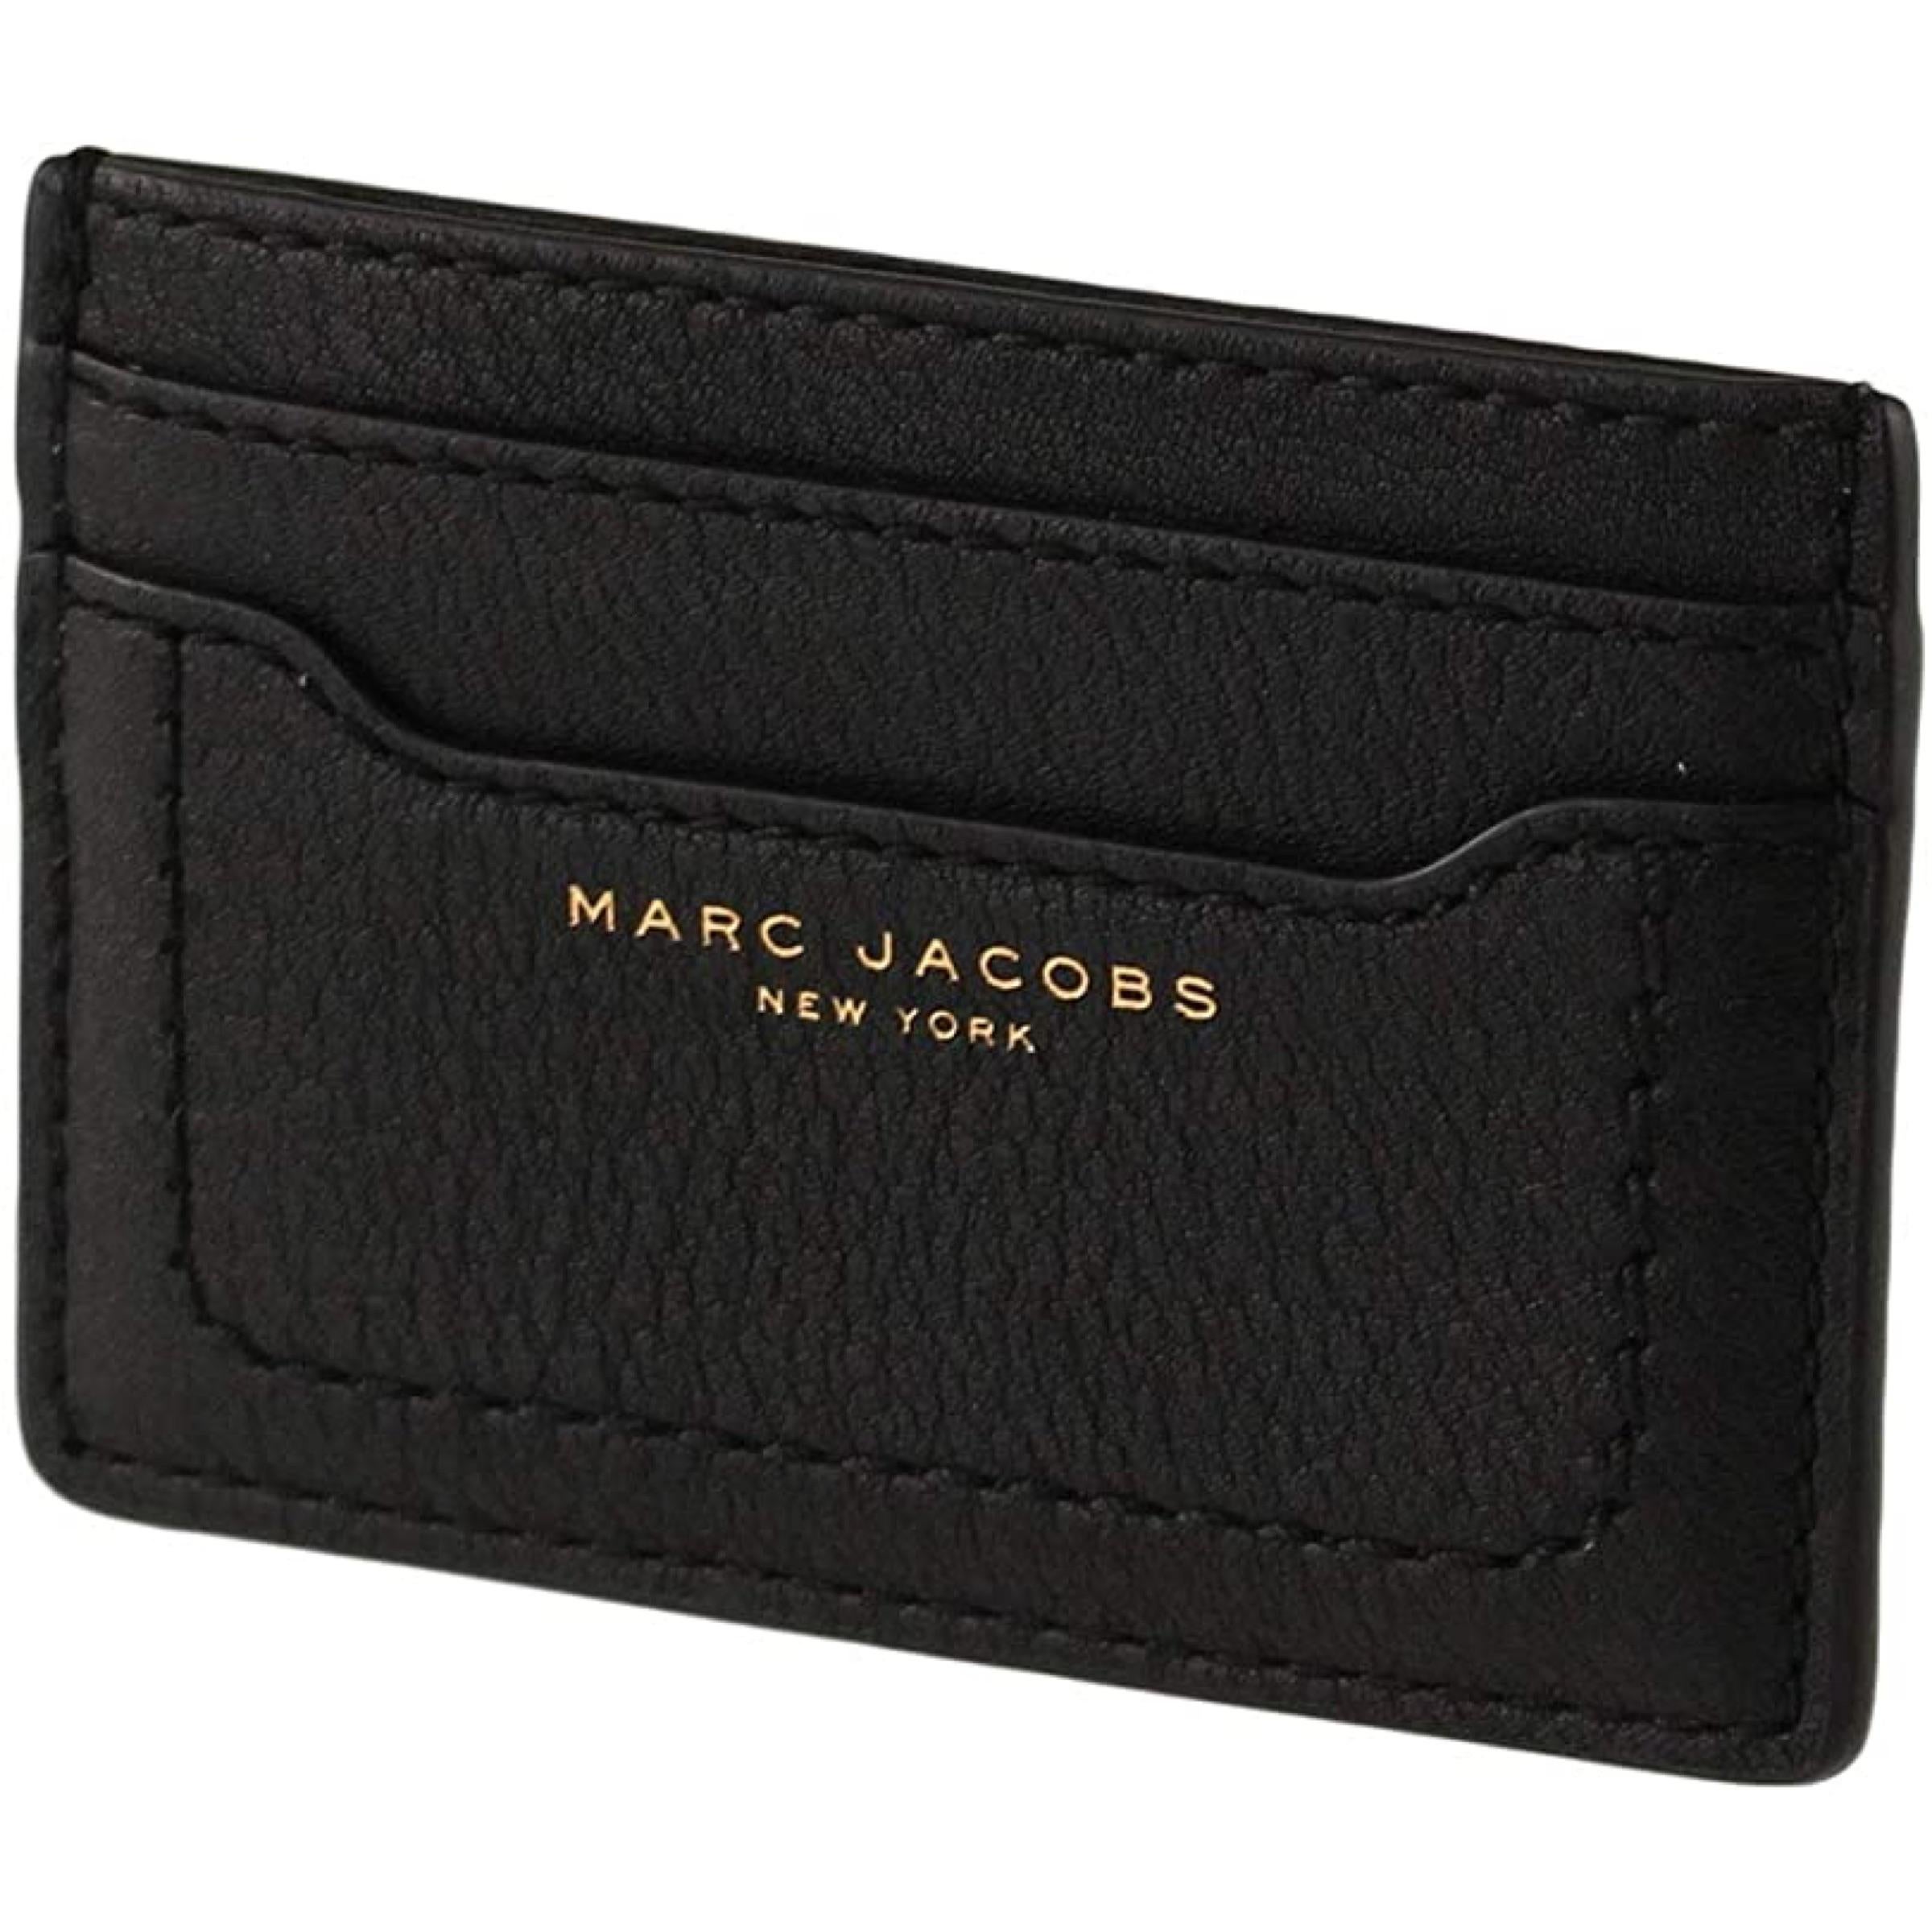 marc jacobs card holder black